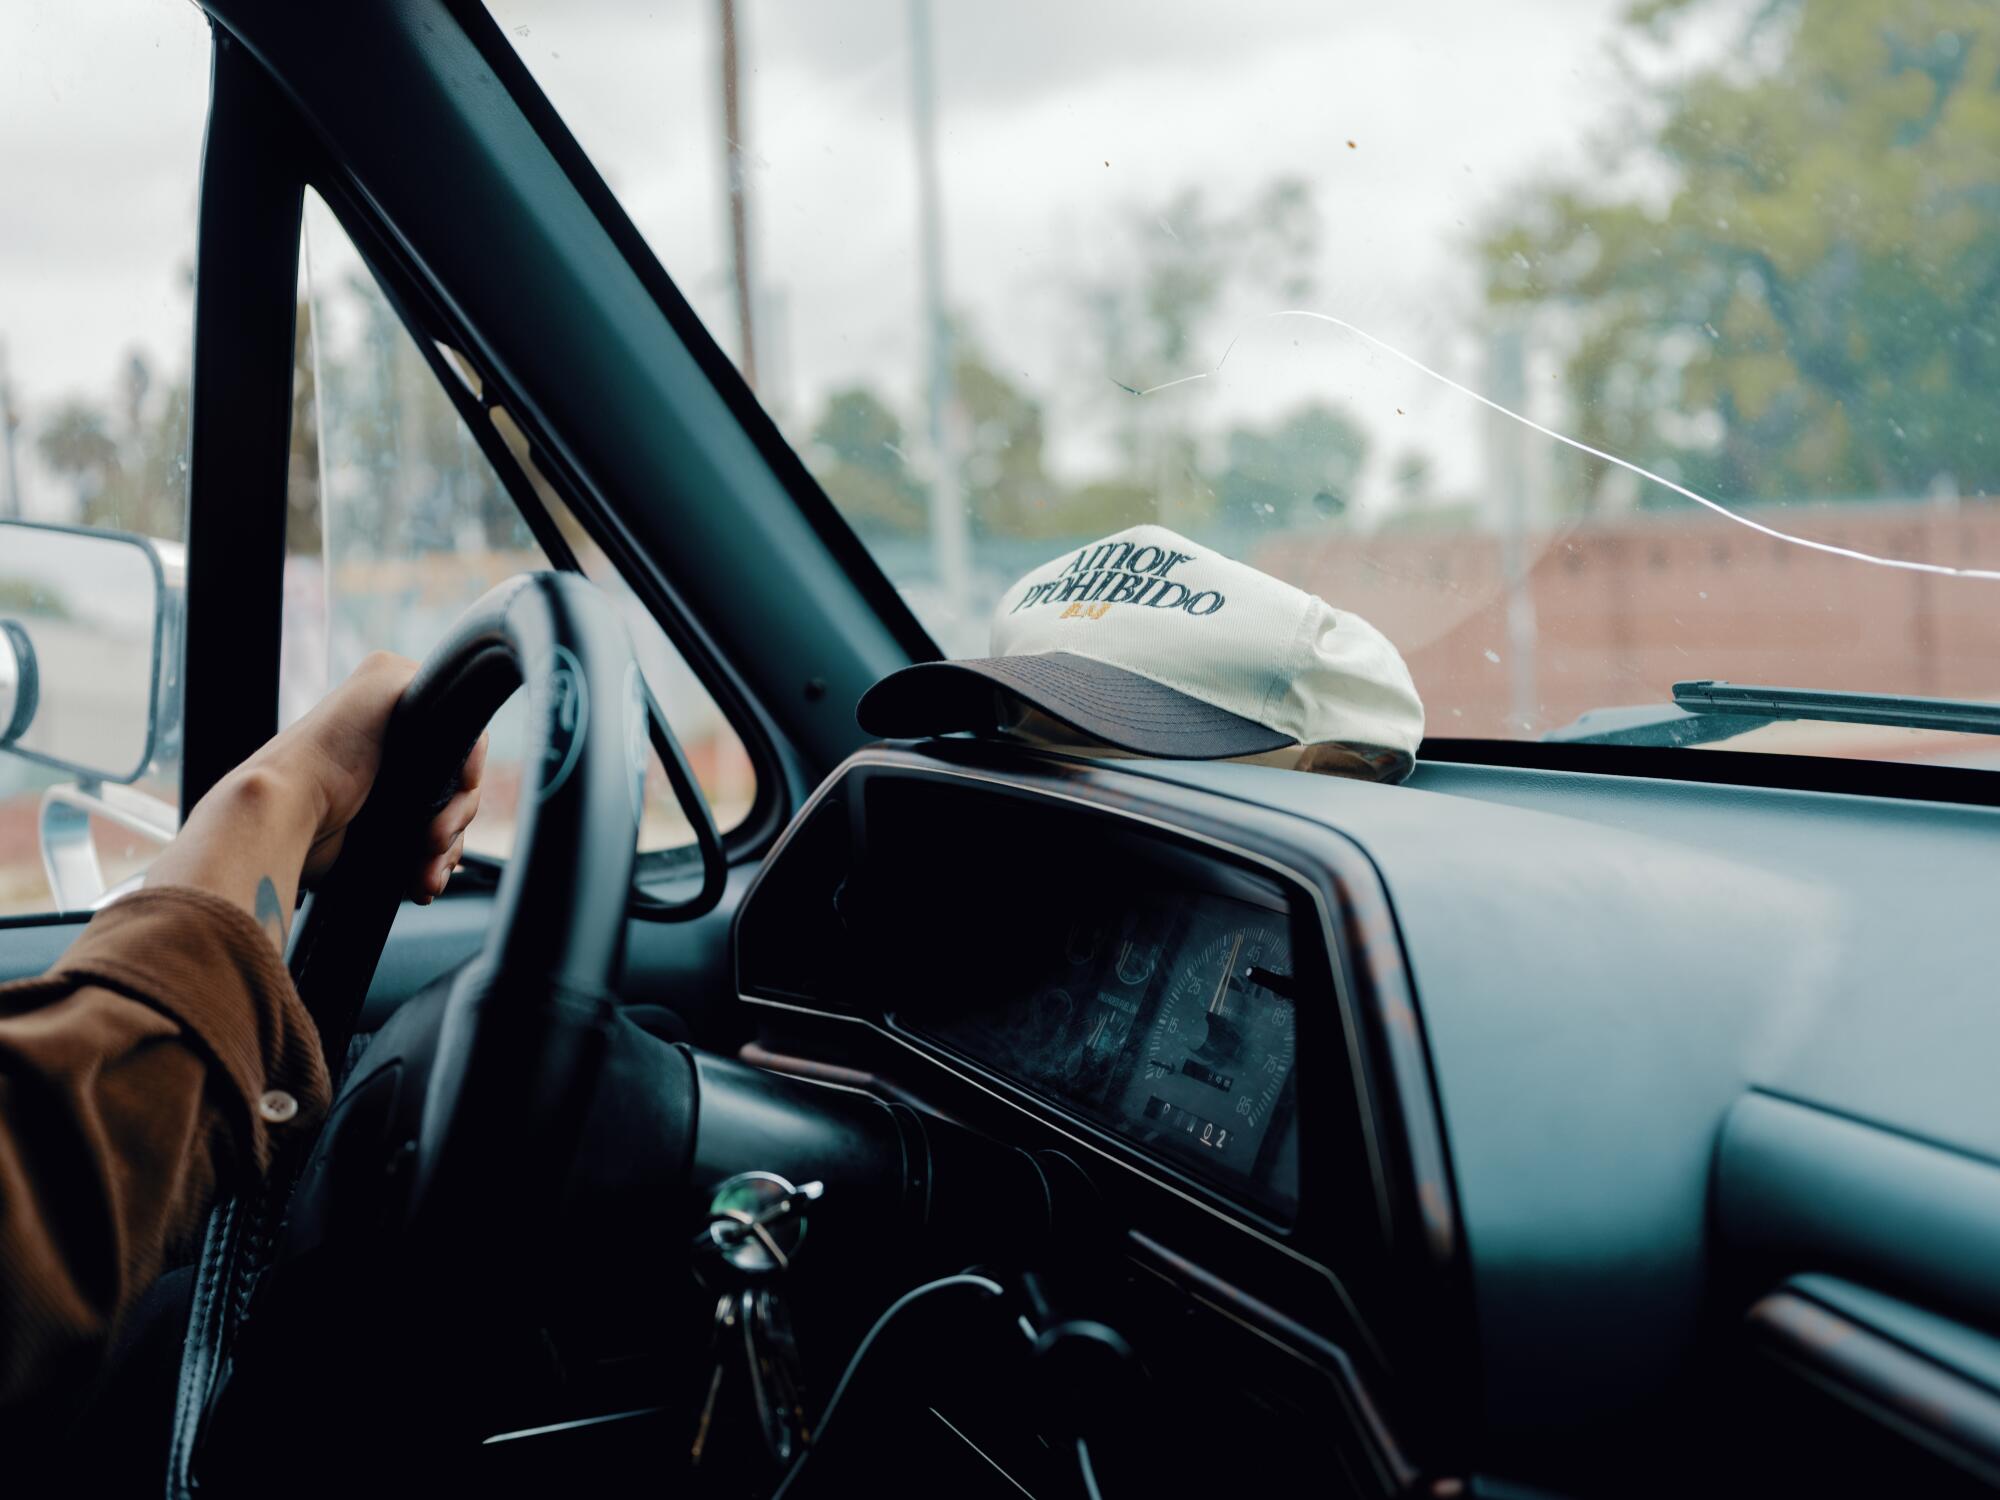 Preciado behind the wheel of his ’91 baby blue Ford F-150.